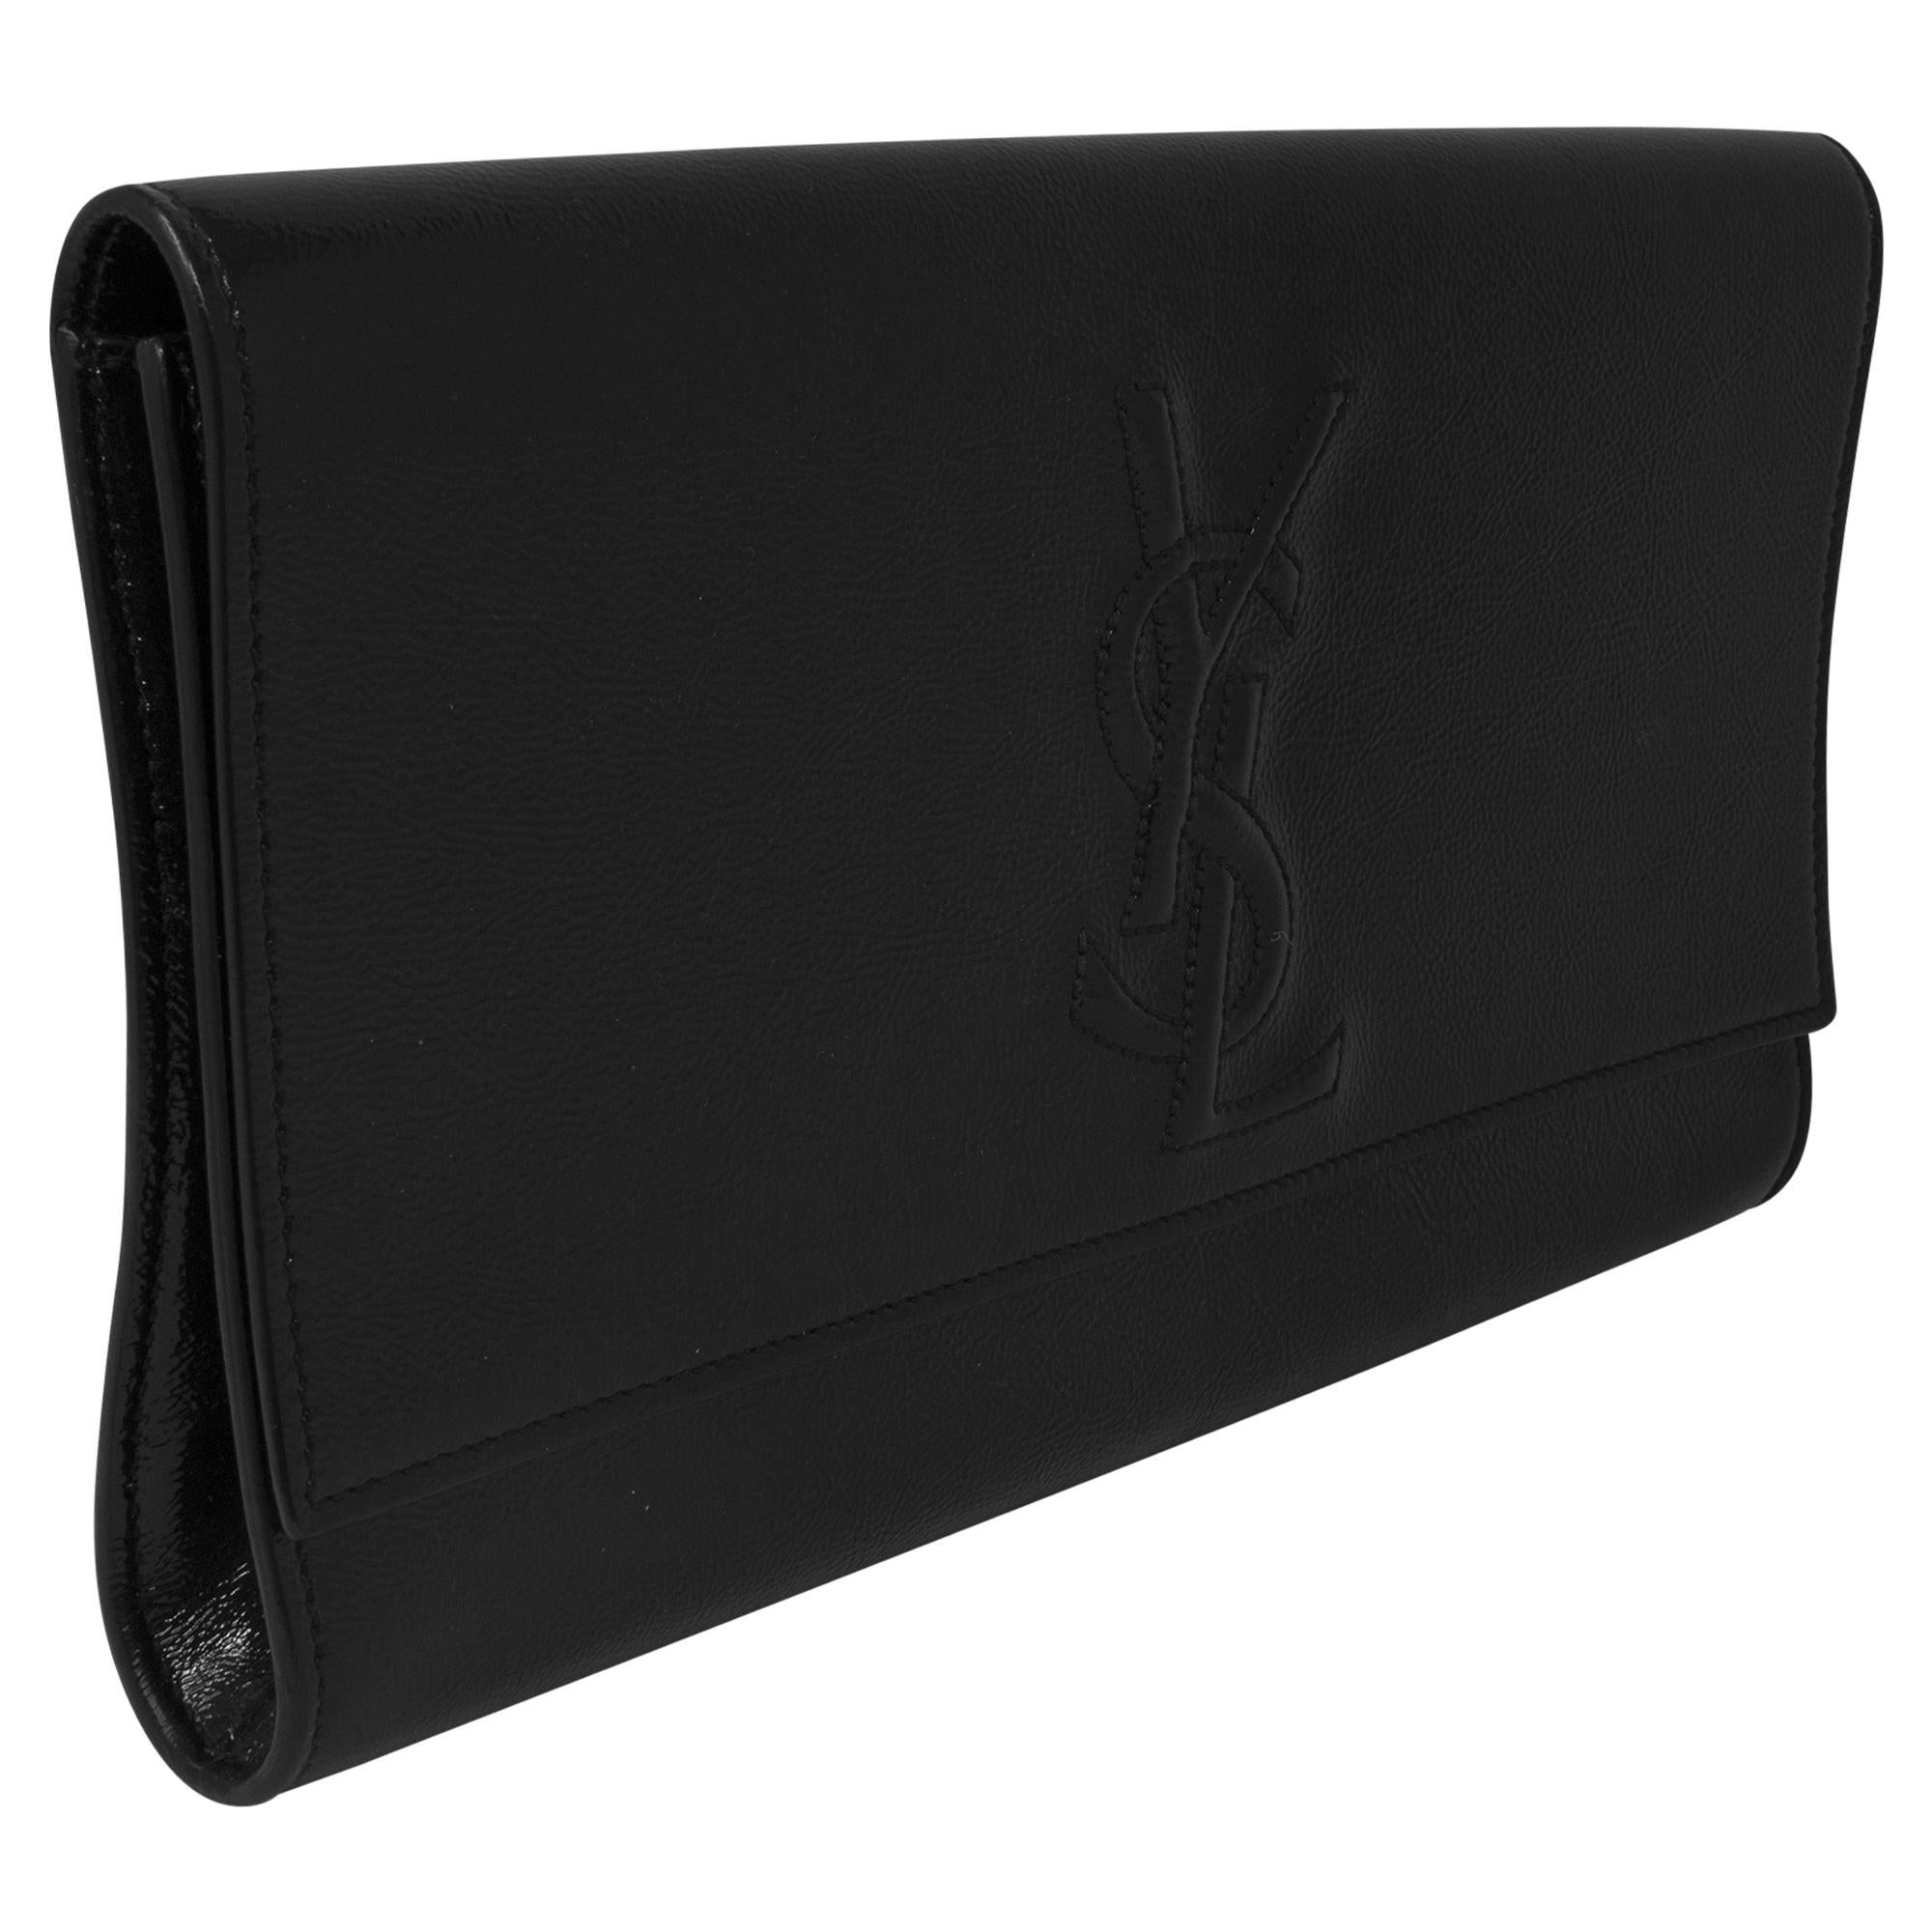 Die Yves Saint Laurent Black Patent Clutch ist ein elegantes und anspruchsvolles Accessoire für die moderne Frau. Diese Clutch aus luxuriösem schwarzem Lackleder strahlt Eleganz und zeitlosen Stil aus. Mit ihrem minimalistischen Design und den